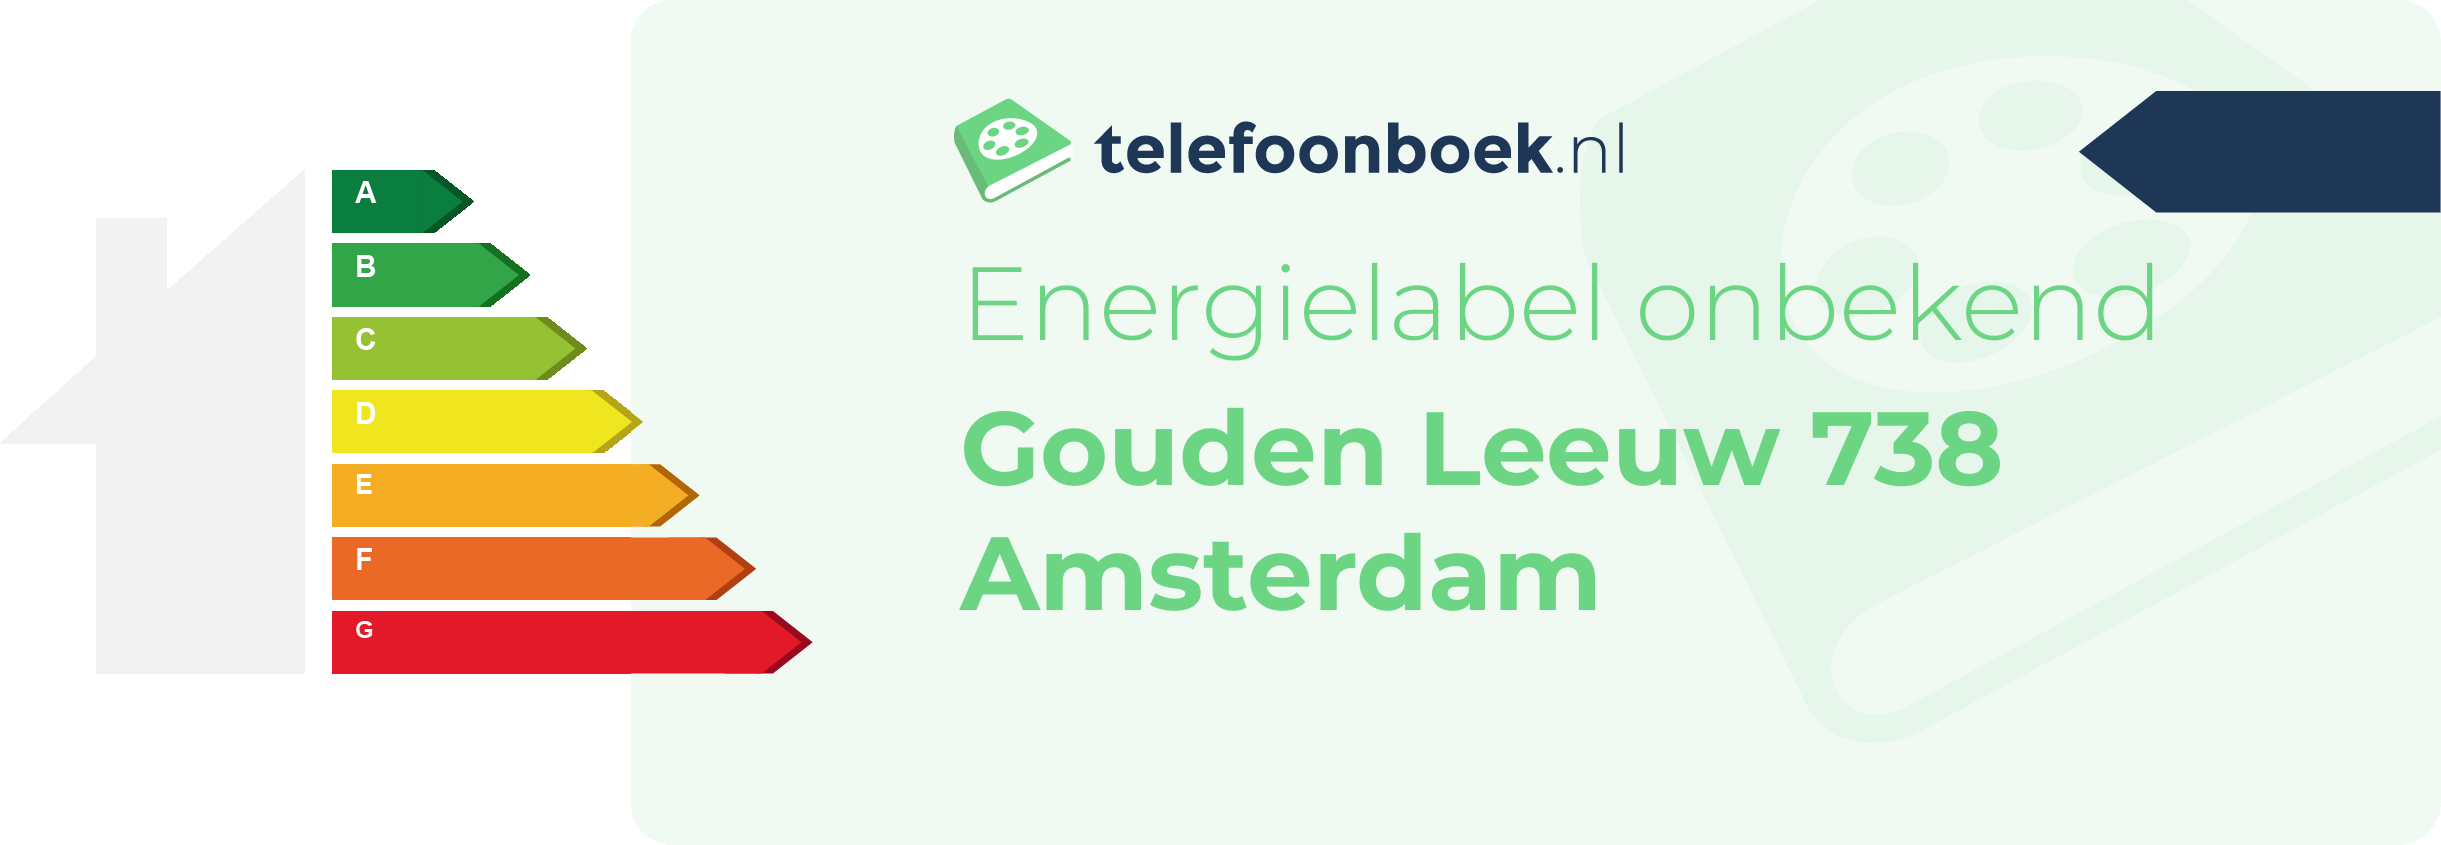 Energielabel Gouden Leeuw 738 Amsterdam